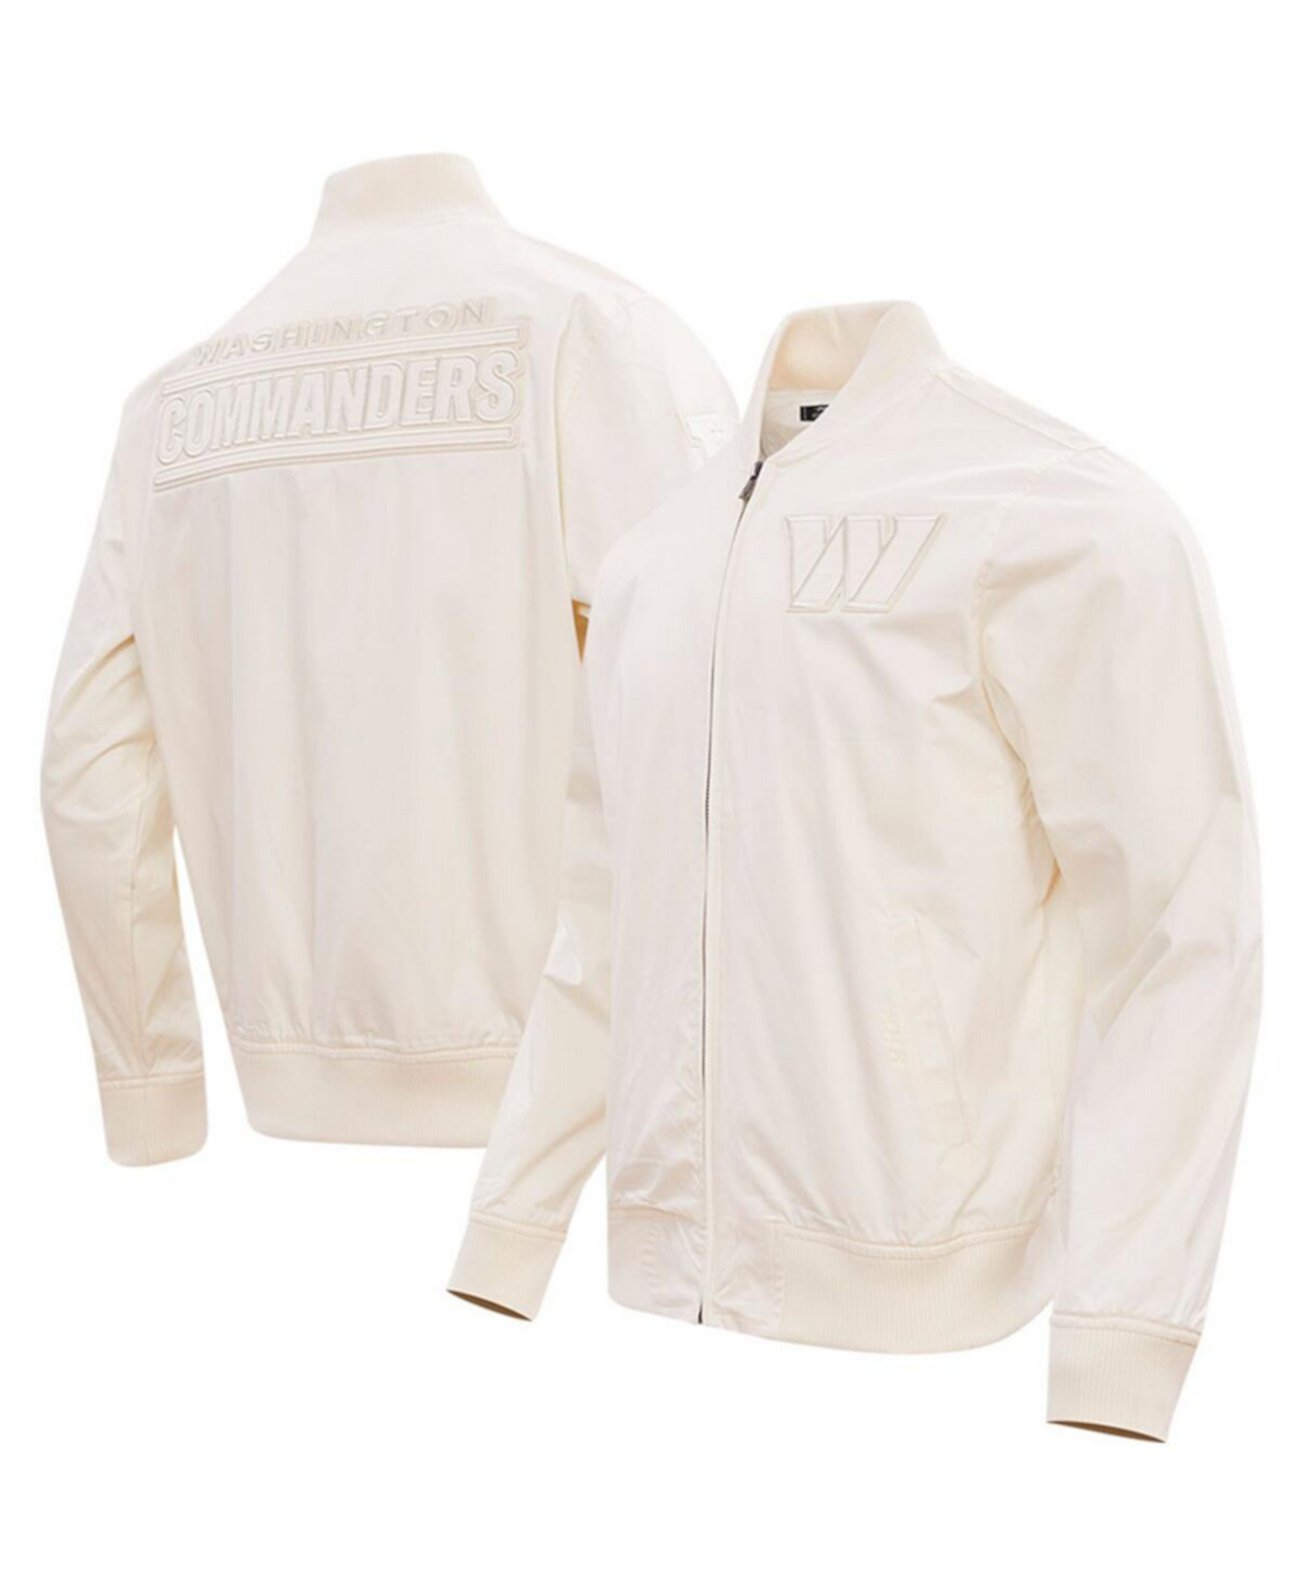 Мужская кремовая куртка Washington Commanders нейтрального цвета с молнией во всю длину Pro Standard